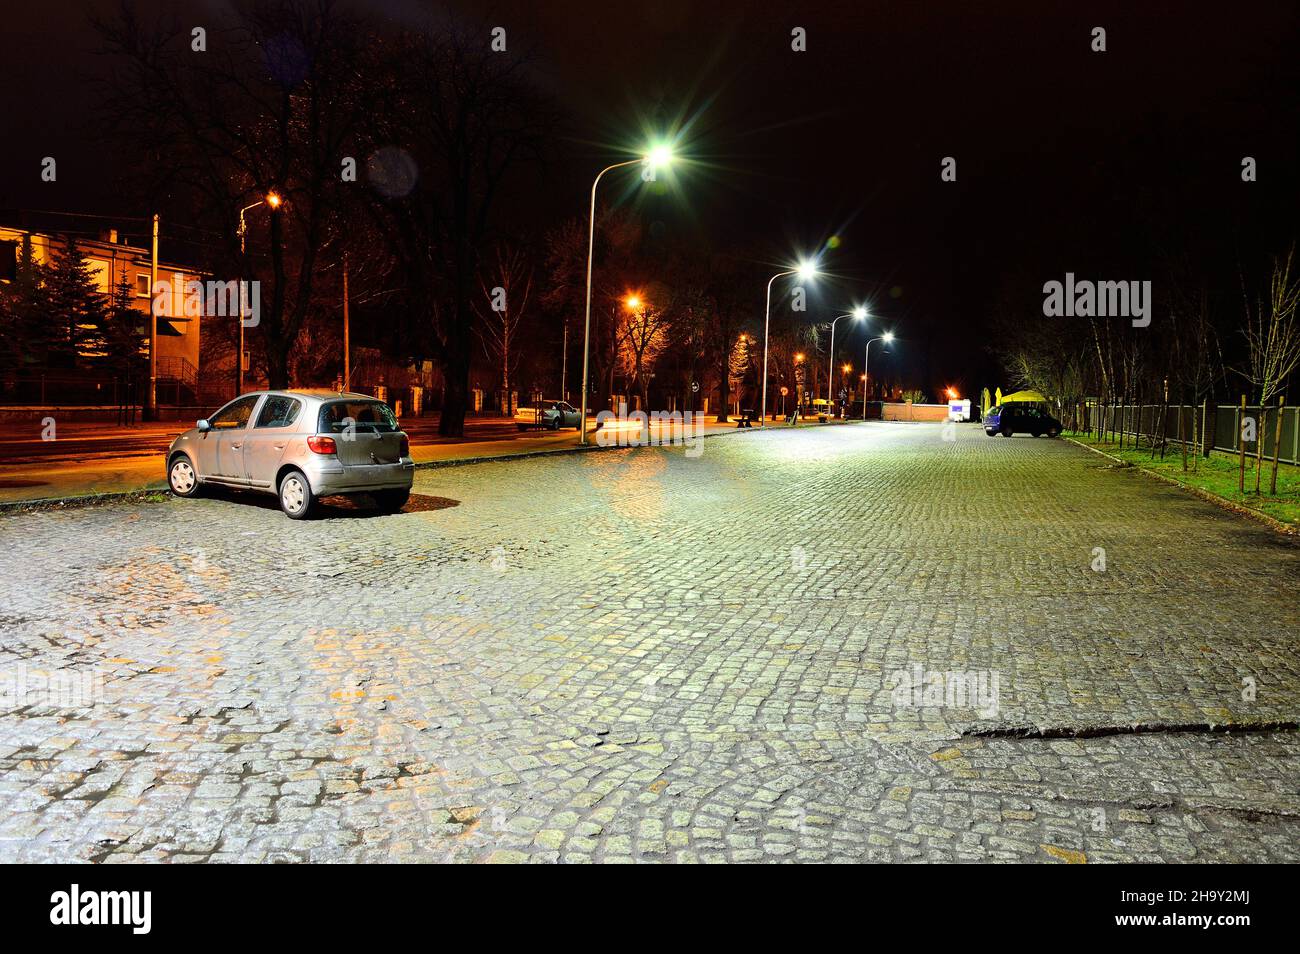 Strade dopo la pioggia in una città notturna illuminata da luci di strada. Pioggia. Foto Stock